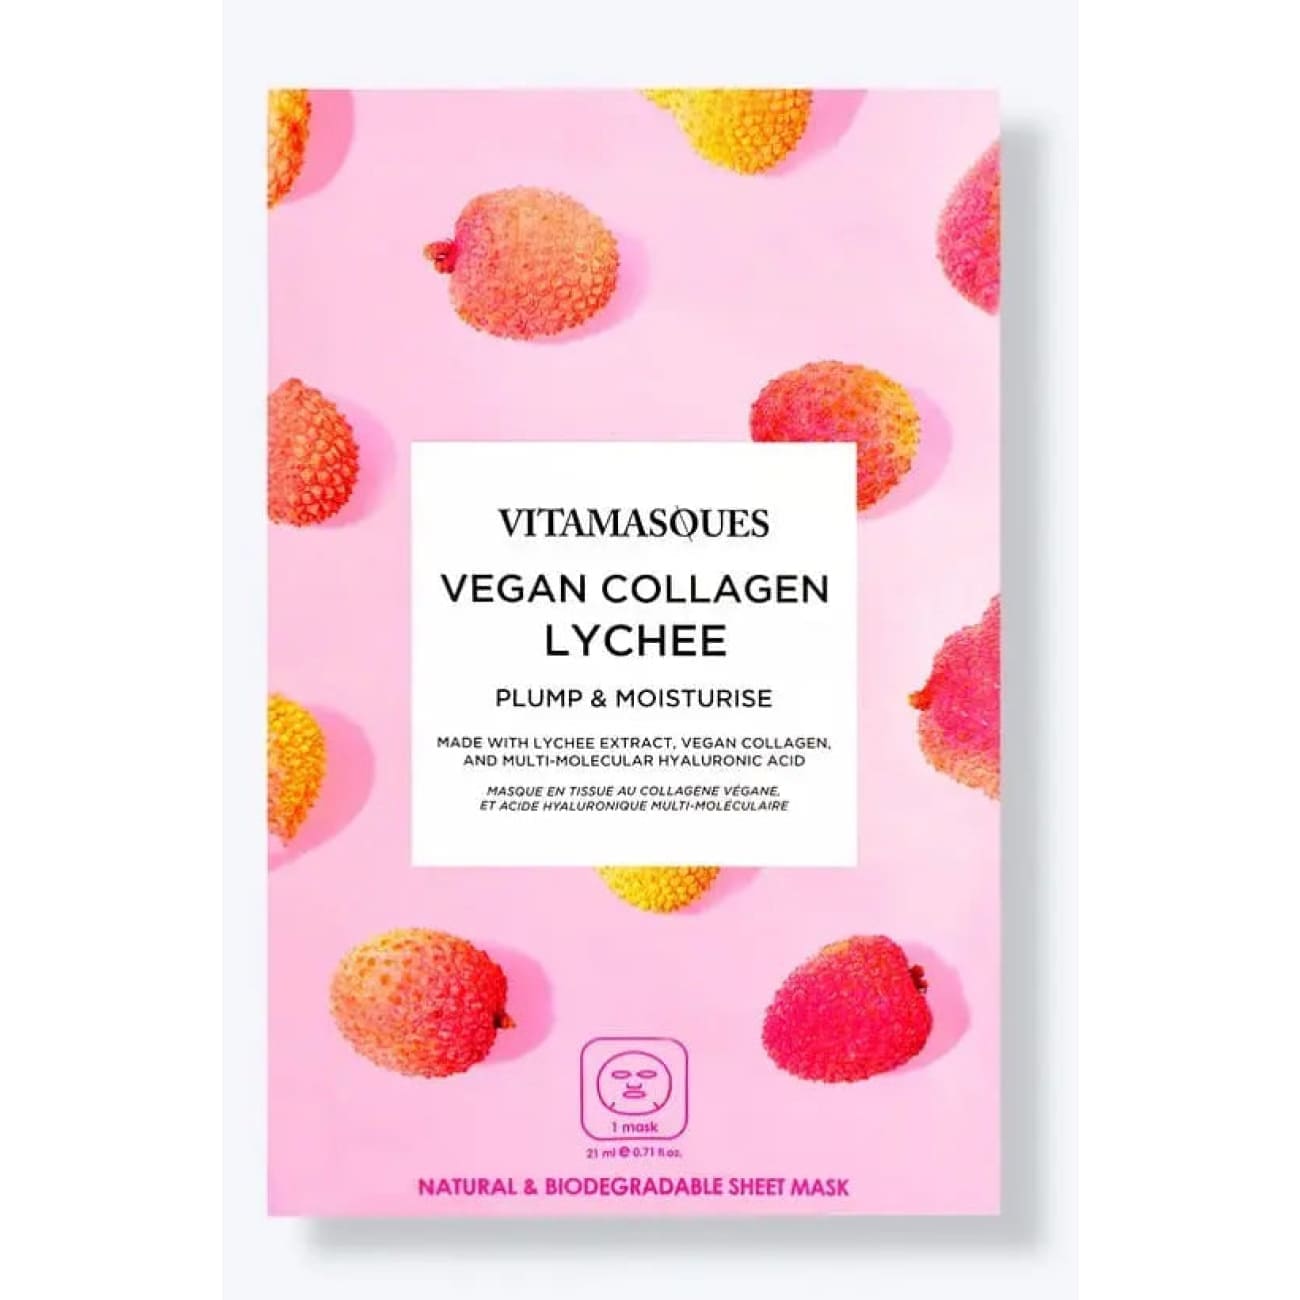 Vegan Collagen Lychee Face Sheet Mask Rock Chocs 